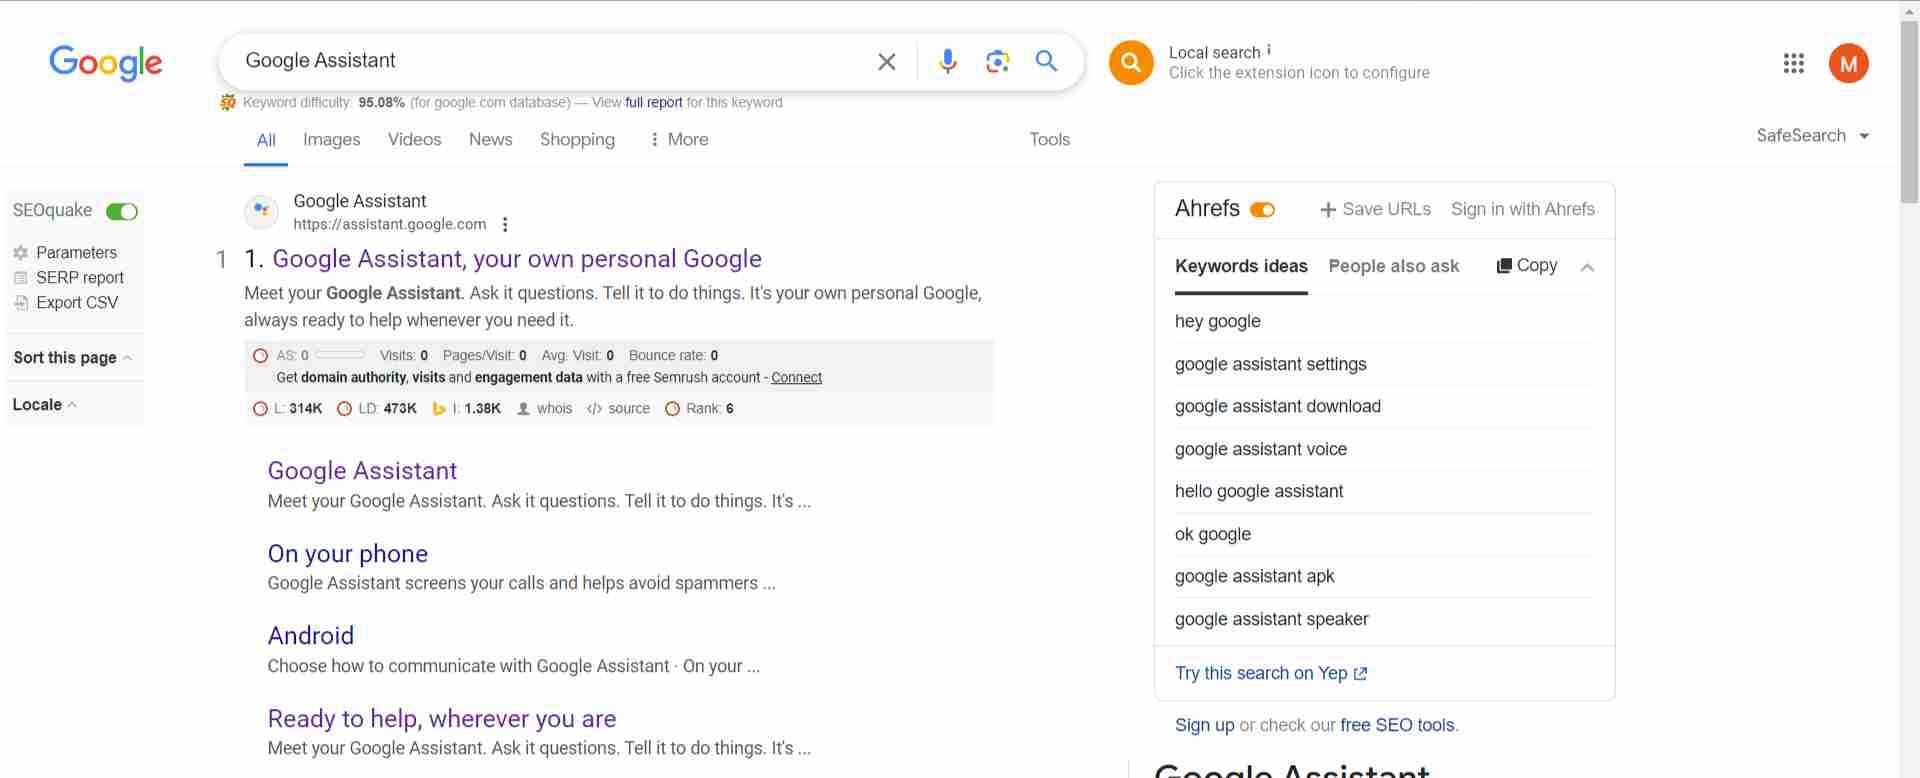  Come fare una domanda all'IA - esempio di Google Assistant 